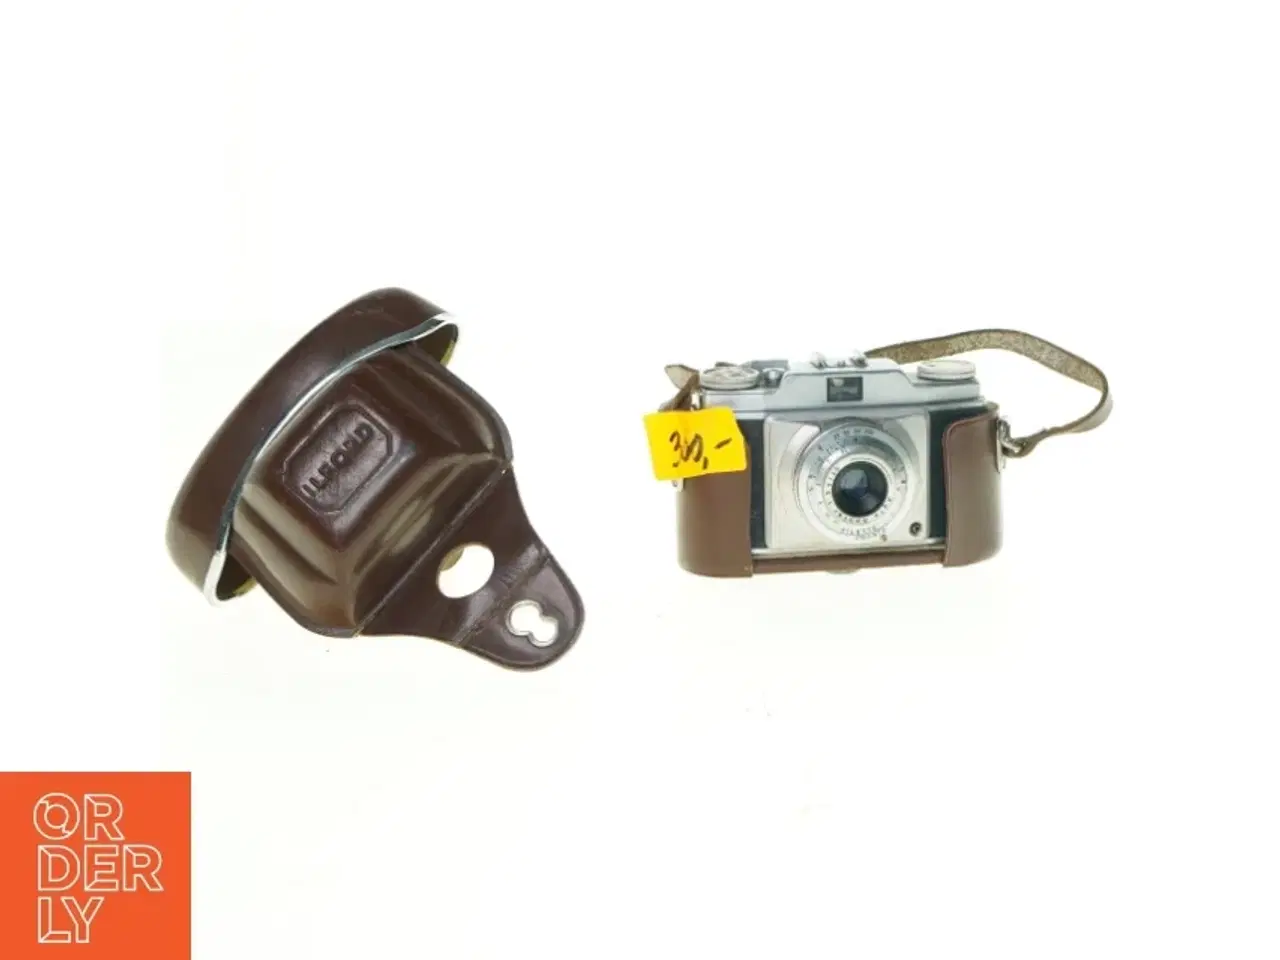 Billede 1 - Kamera fra Ilford (str. 14 x 10 cm)